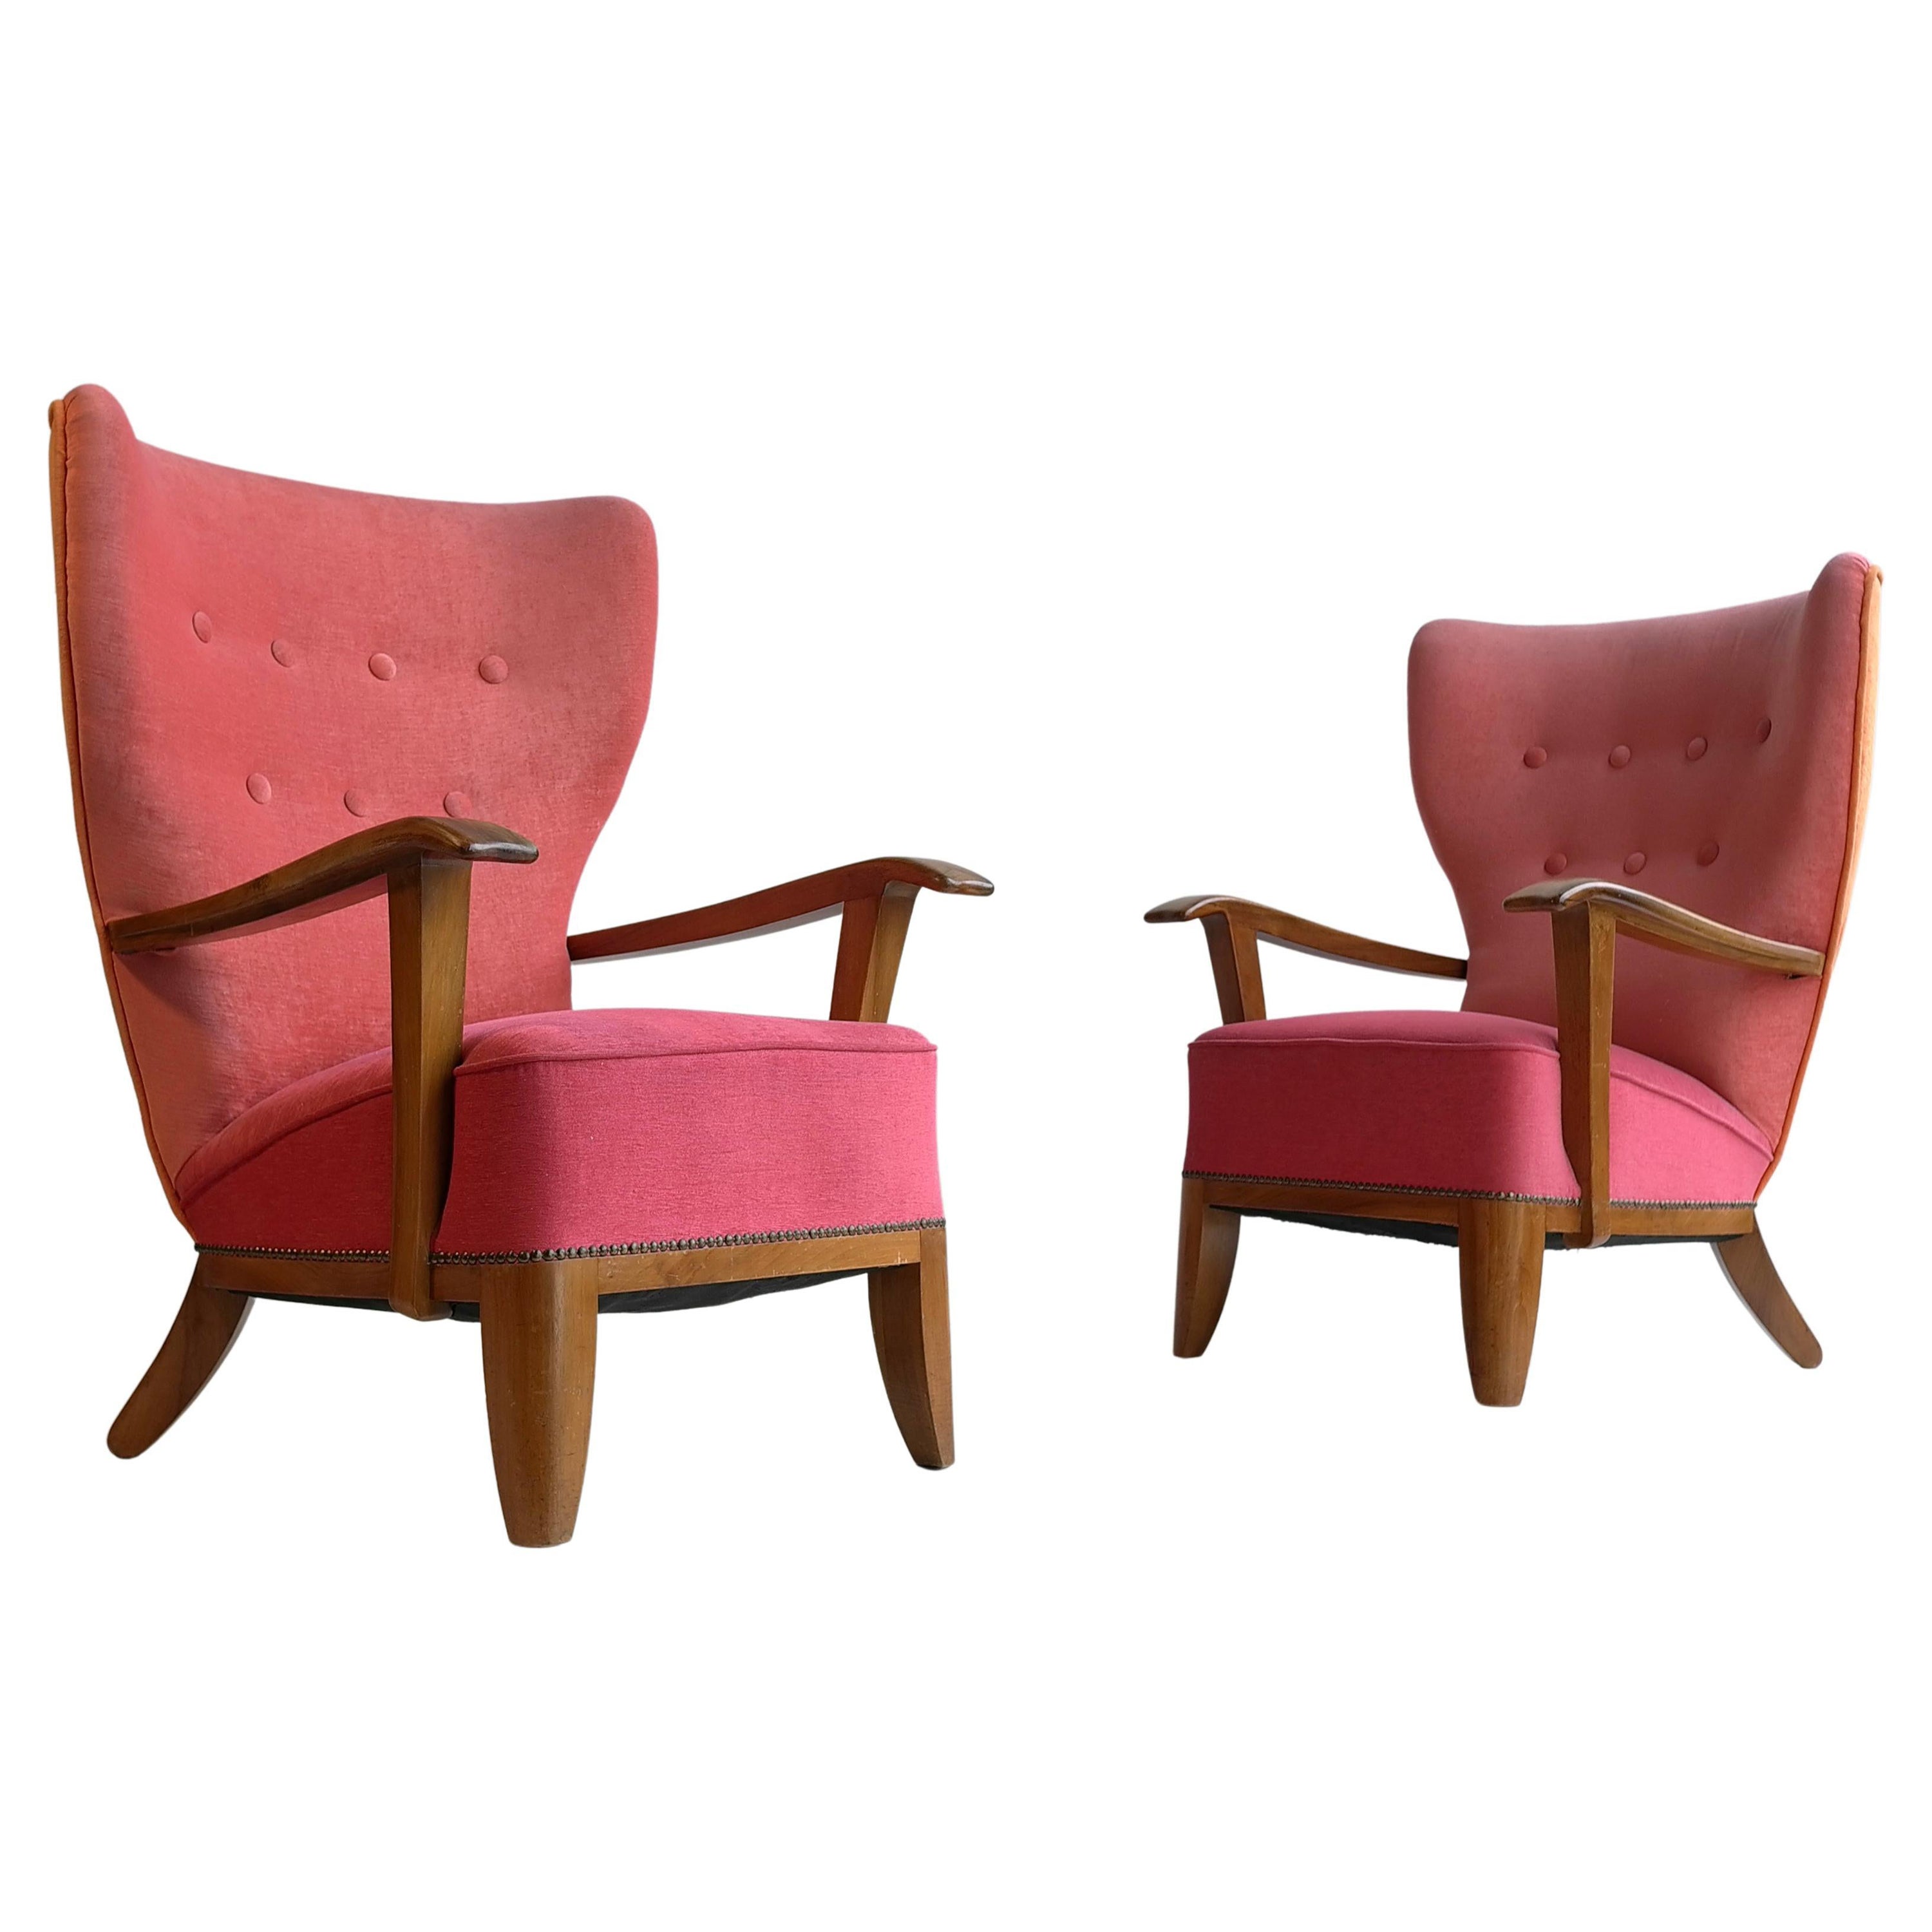 Paire de fauteuils Wingback de style mi-siècle moderne à trois tons, France, 1948